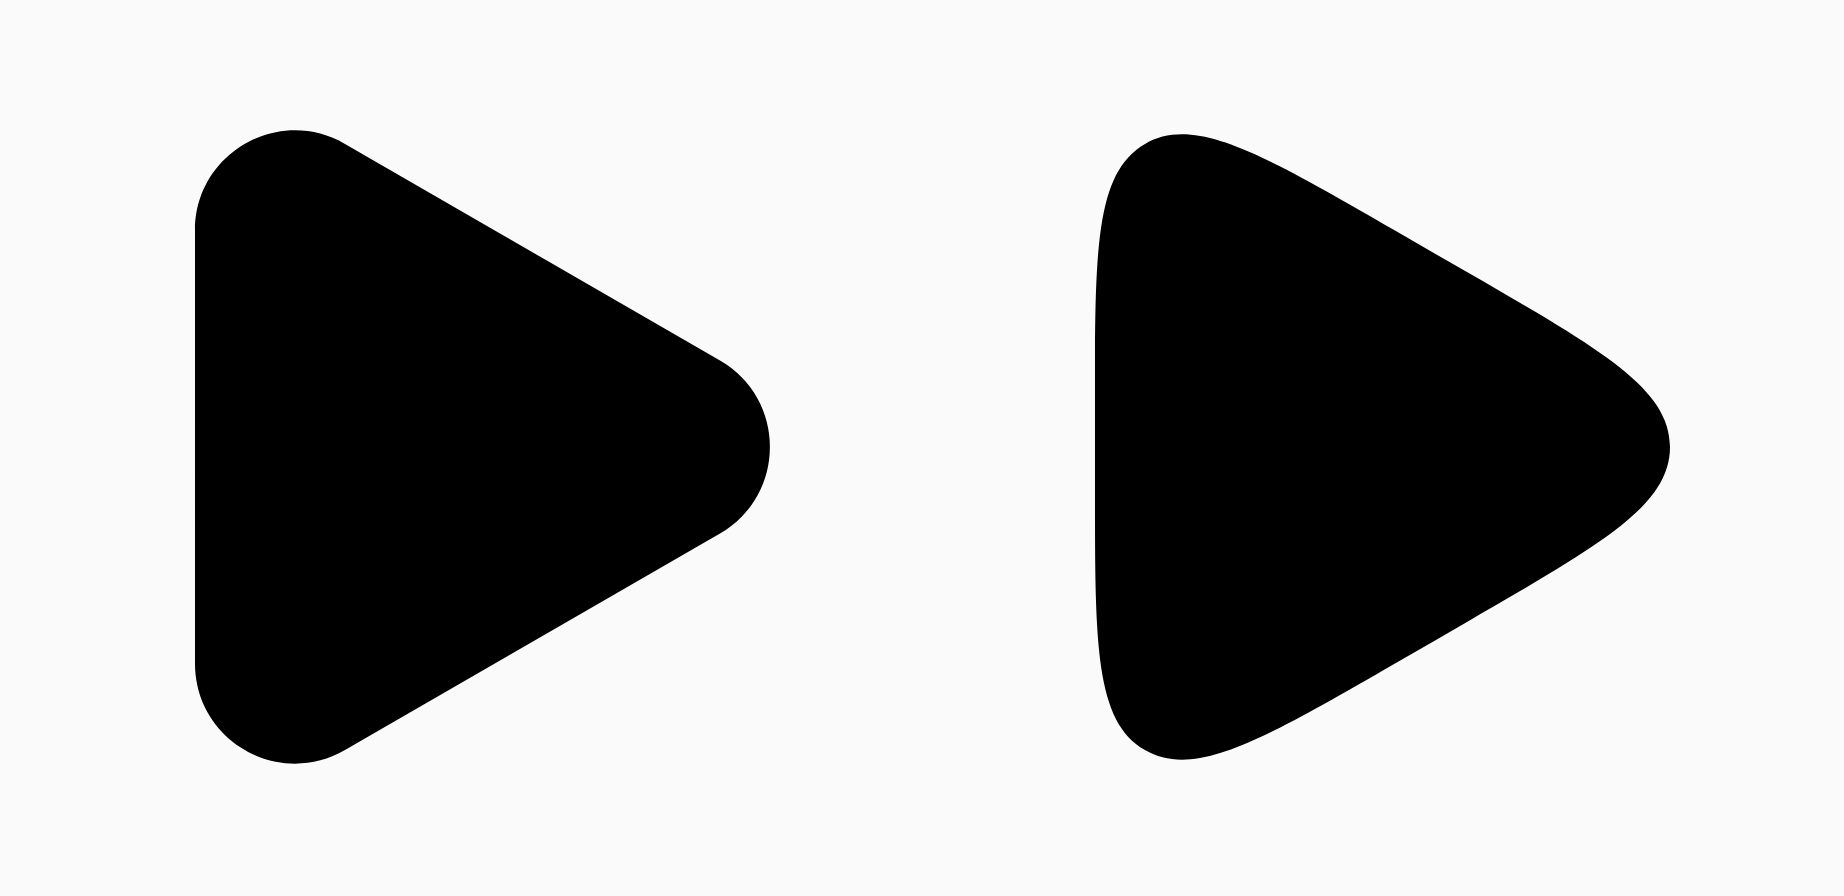 Dois triângulos pretos mostrando a diferença no parâmetro
de suavização.